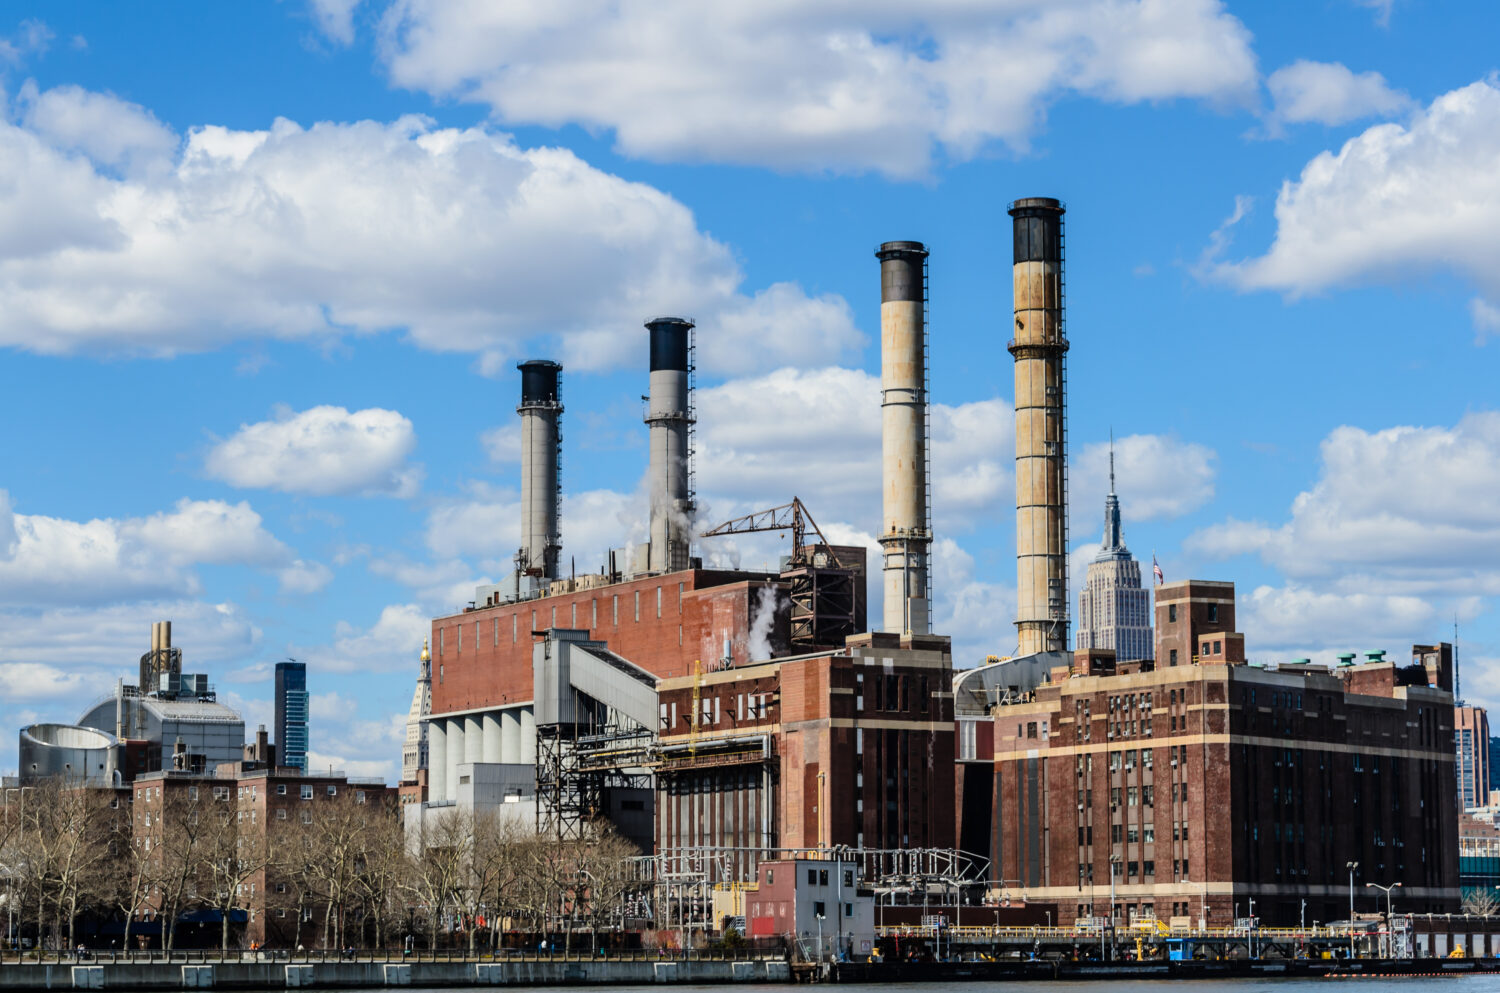 Edifici industriali contro il cielo blu.  Manhattan, New York, Stati Uniti, America